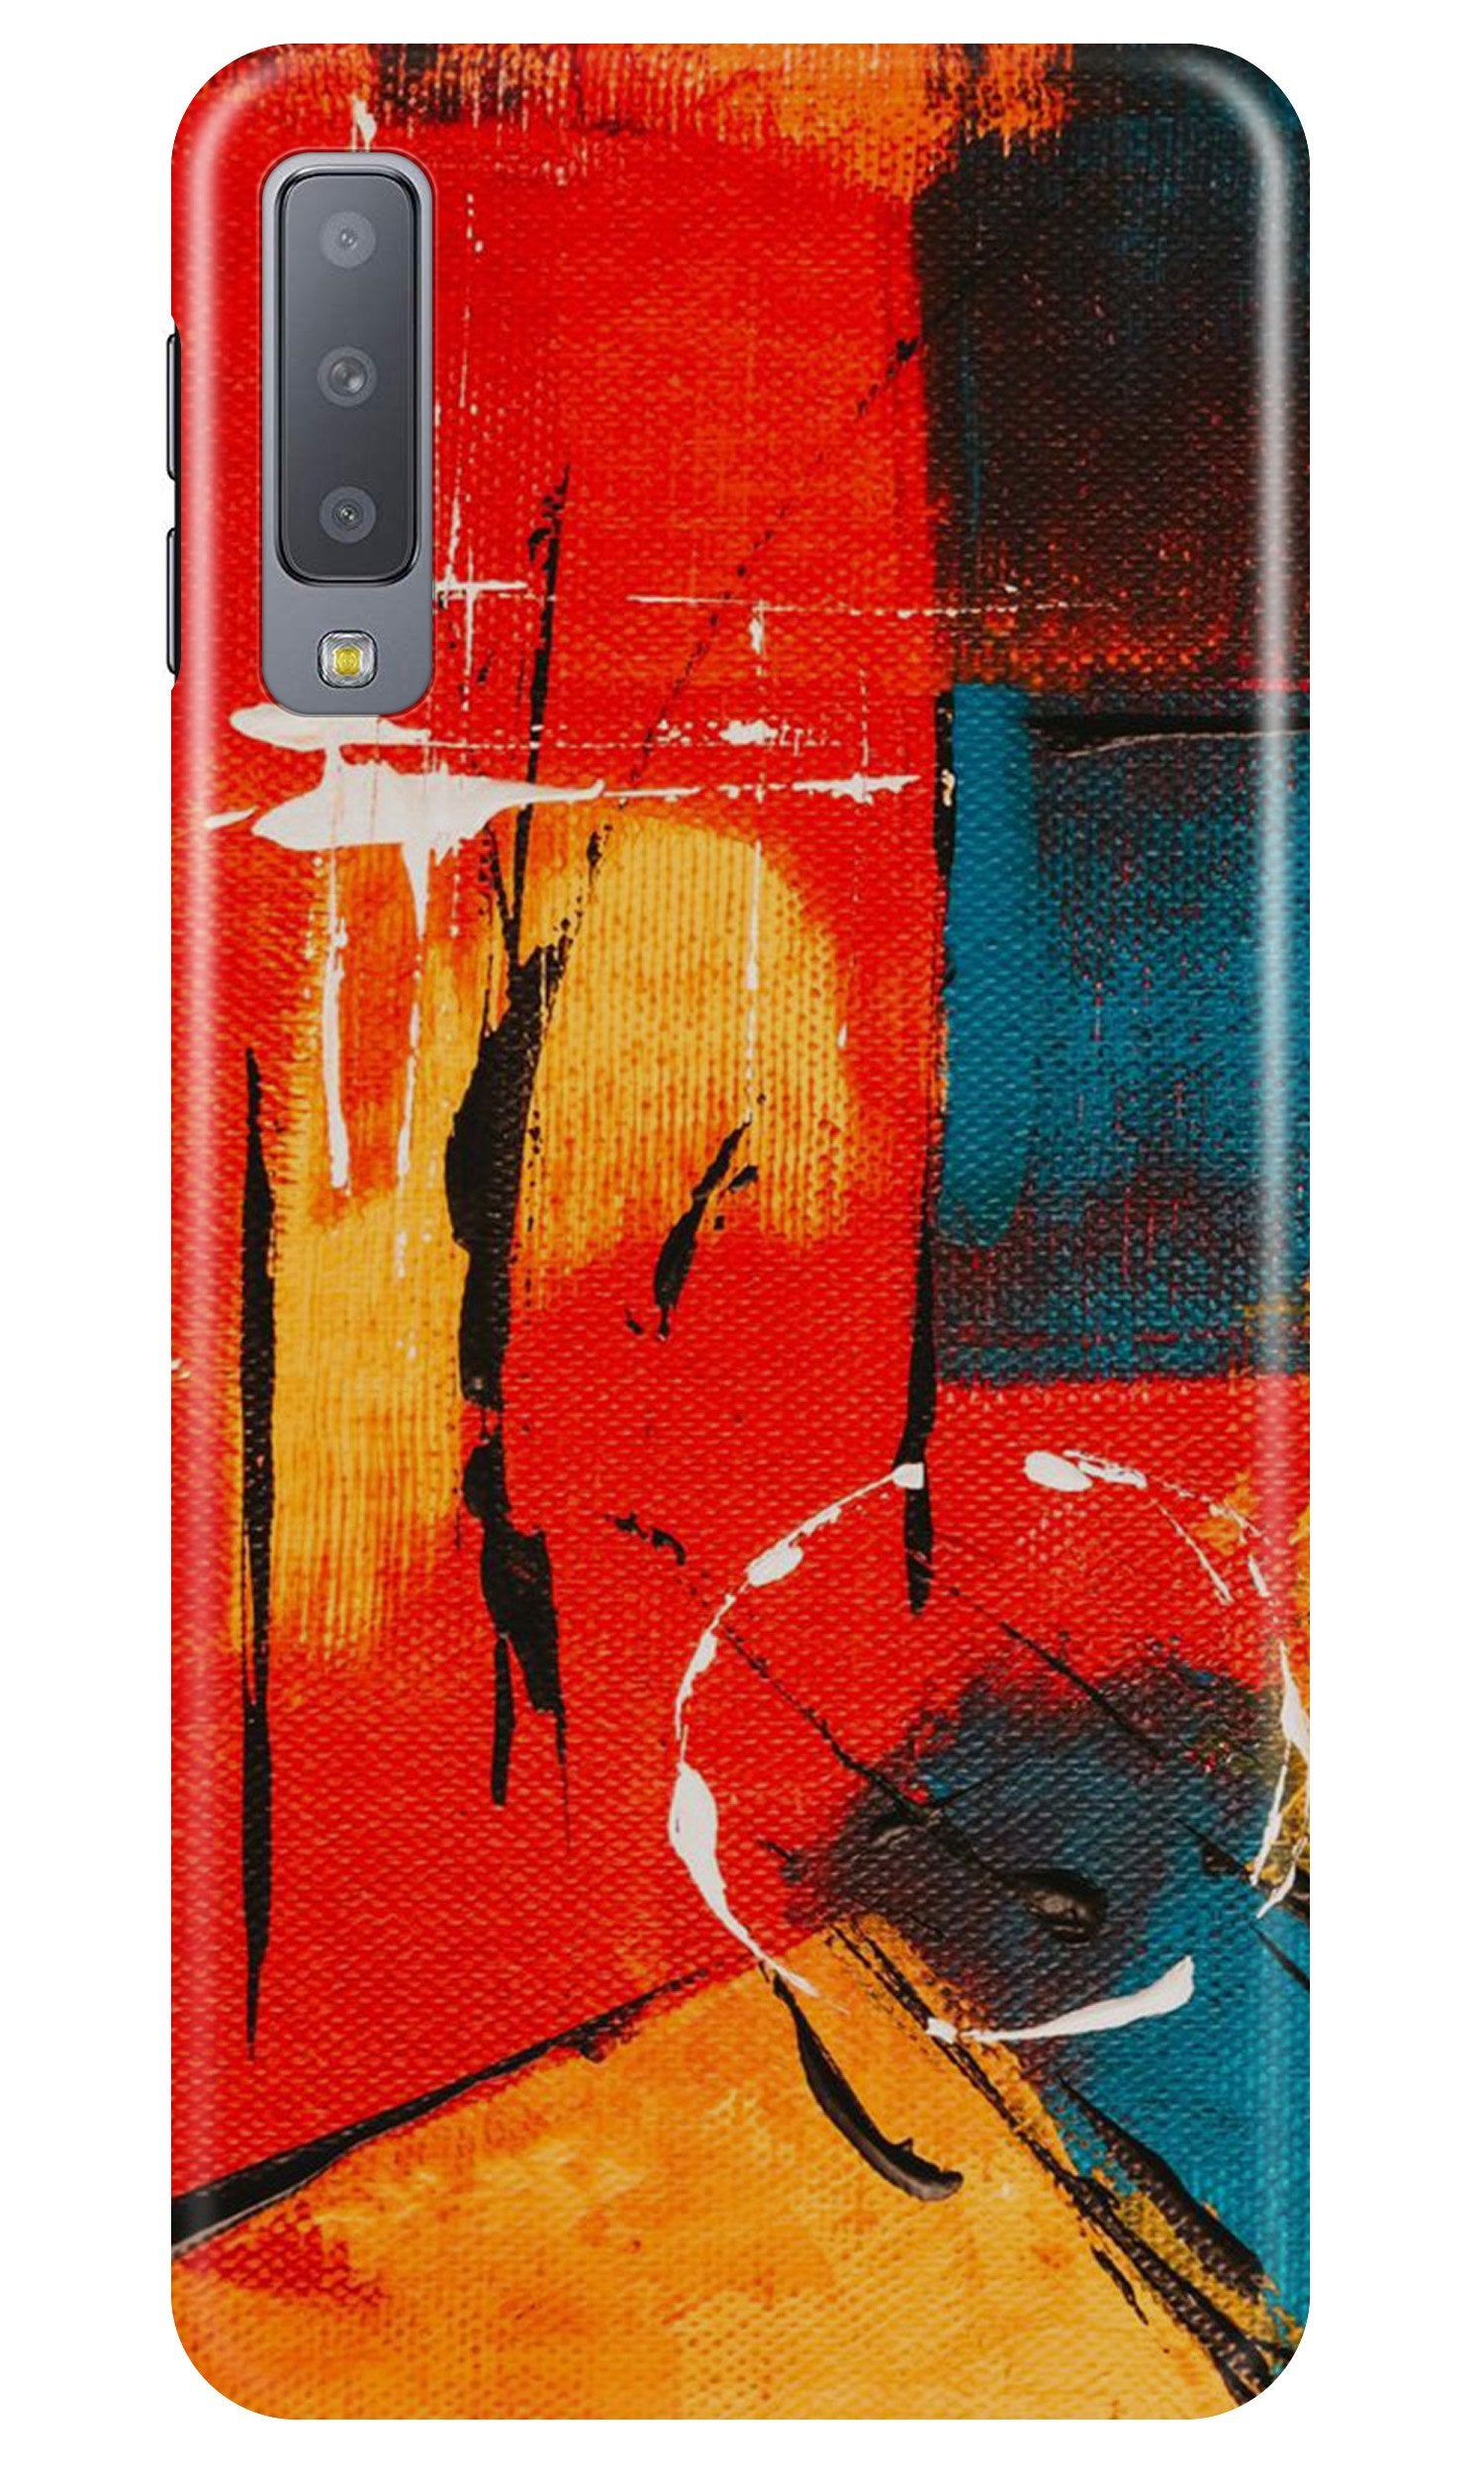 Modern Art Case for Samung Galaxy A70s (Design No. 239)